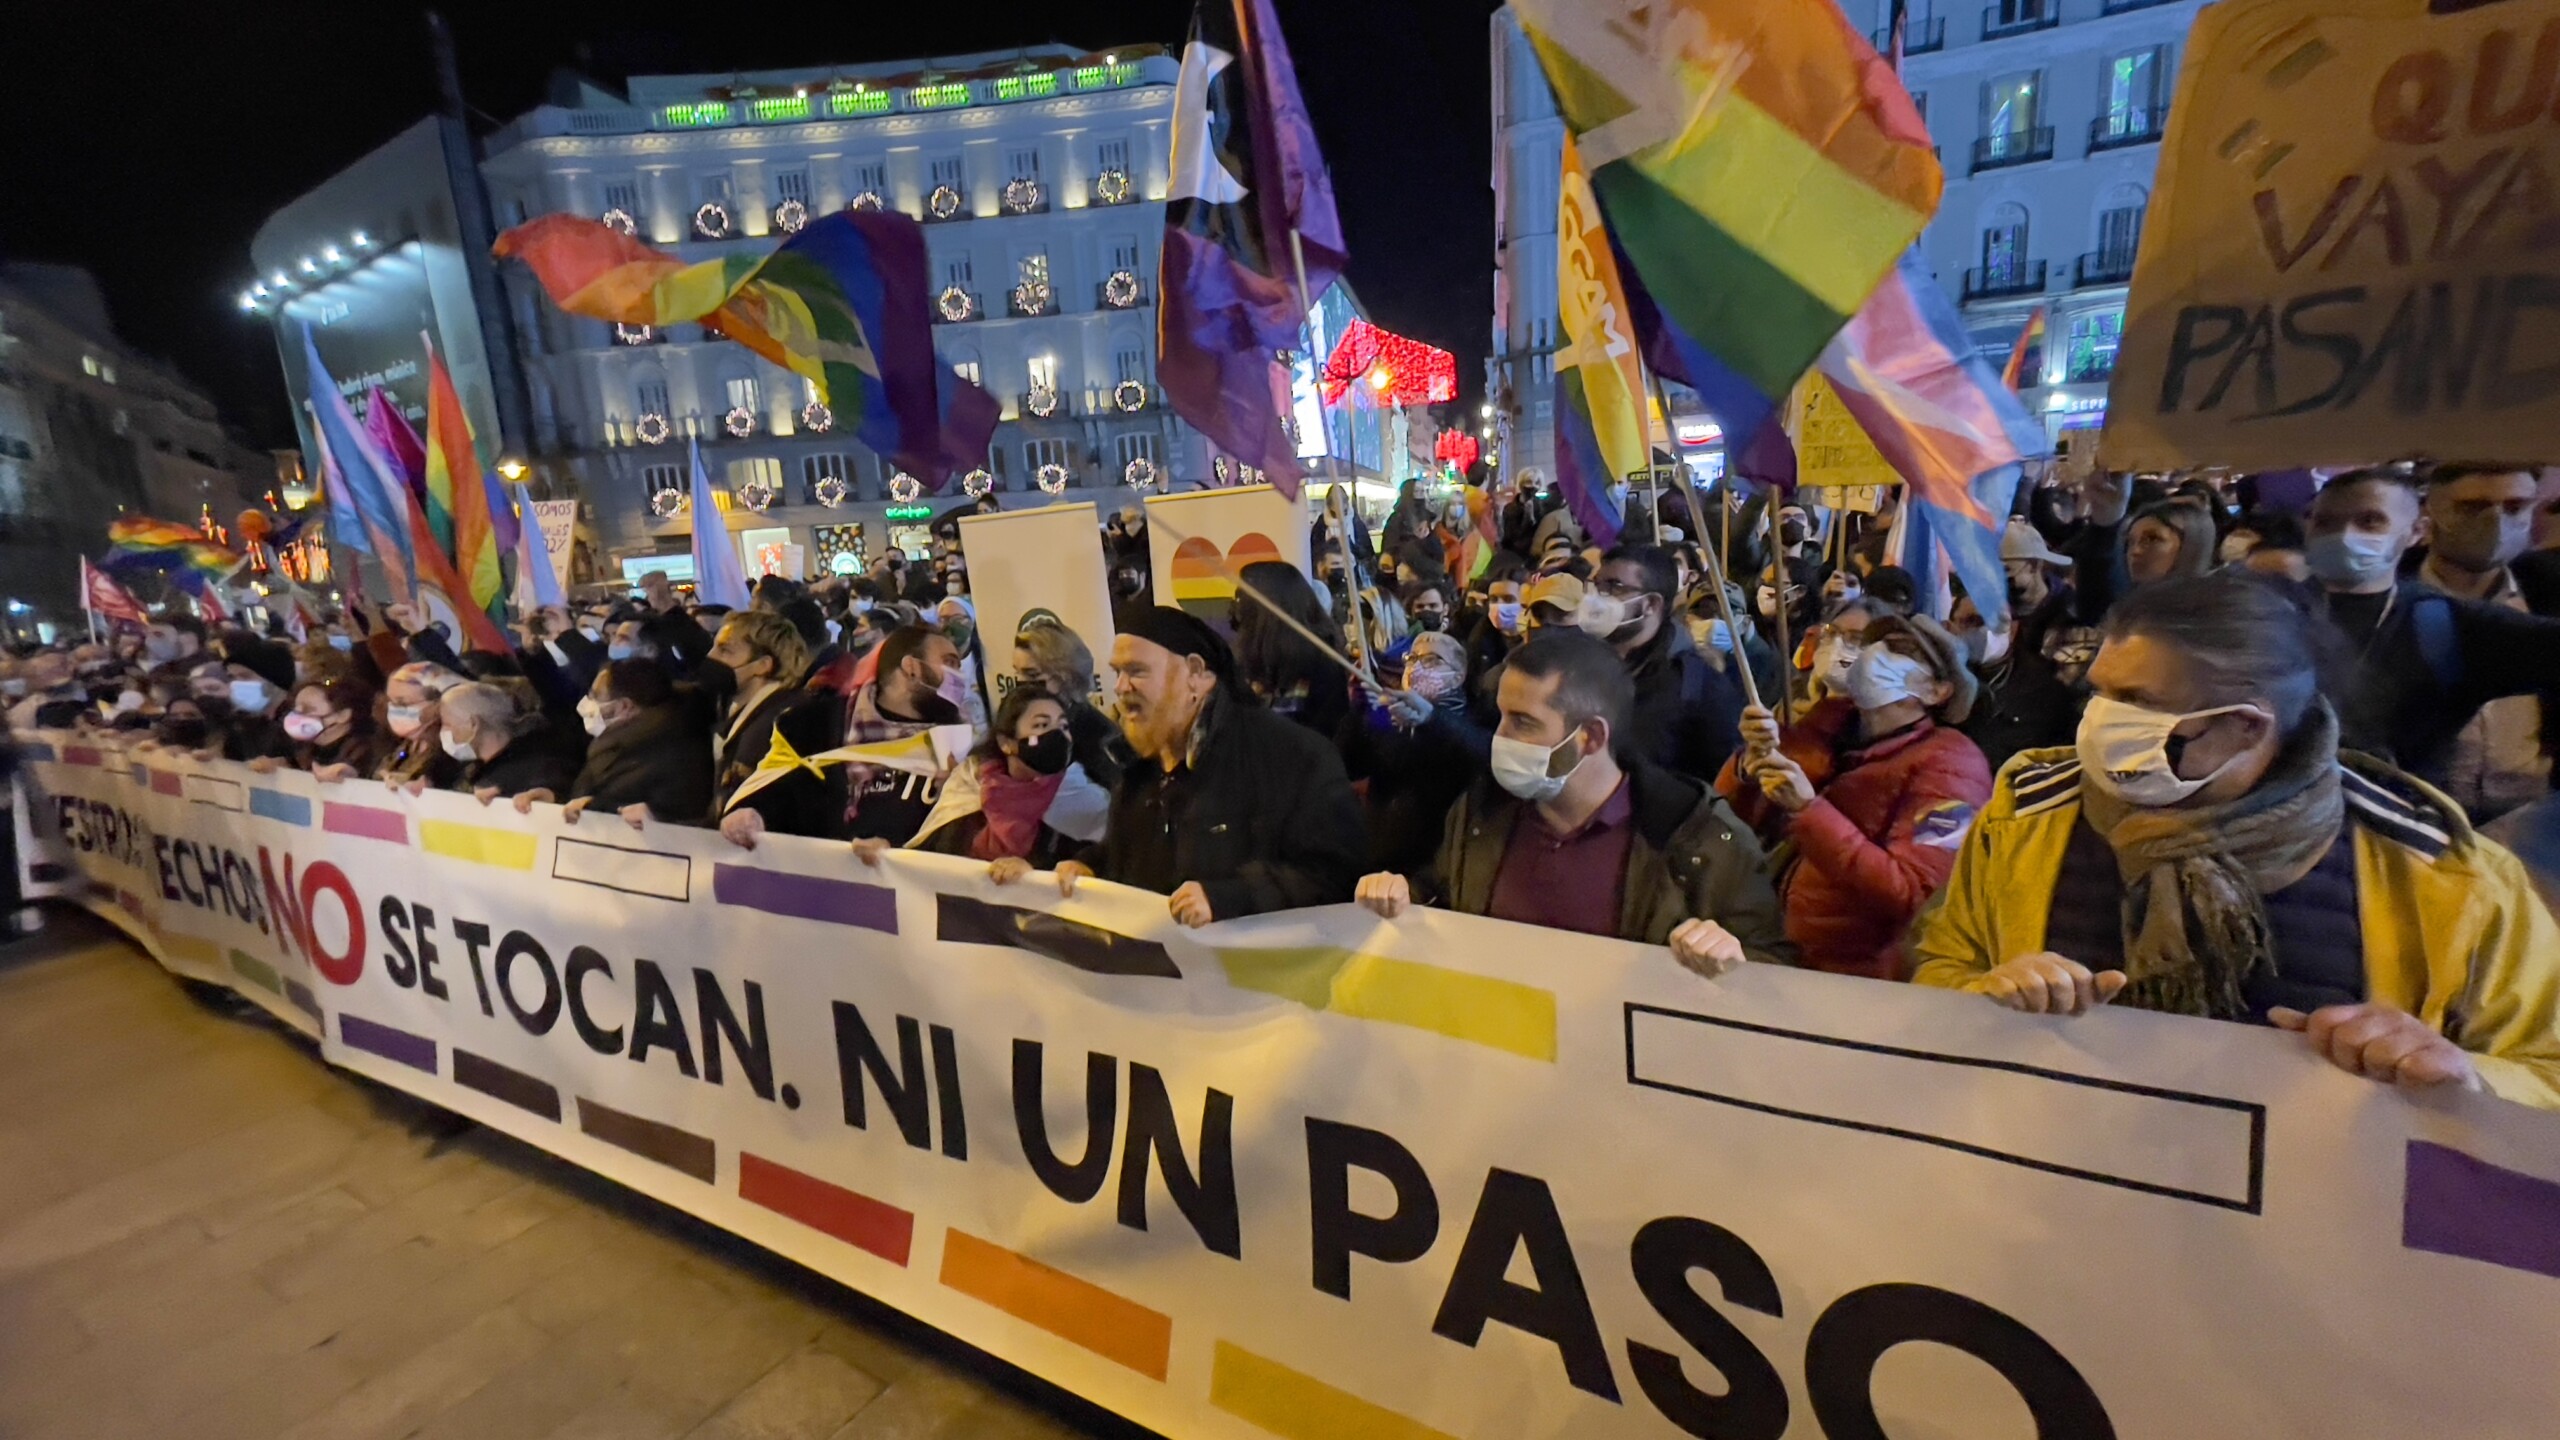 ¡Nuestros derechos no se tocan! Cientos de personas acuden a la manifestación para defender las leyes LGTBI de Madrid